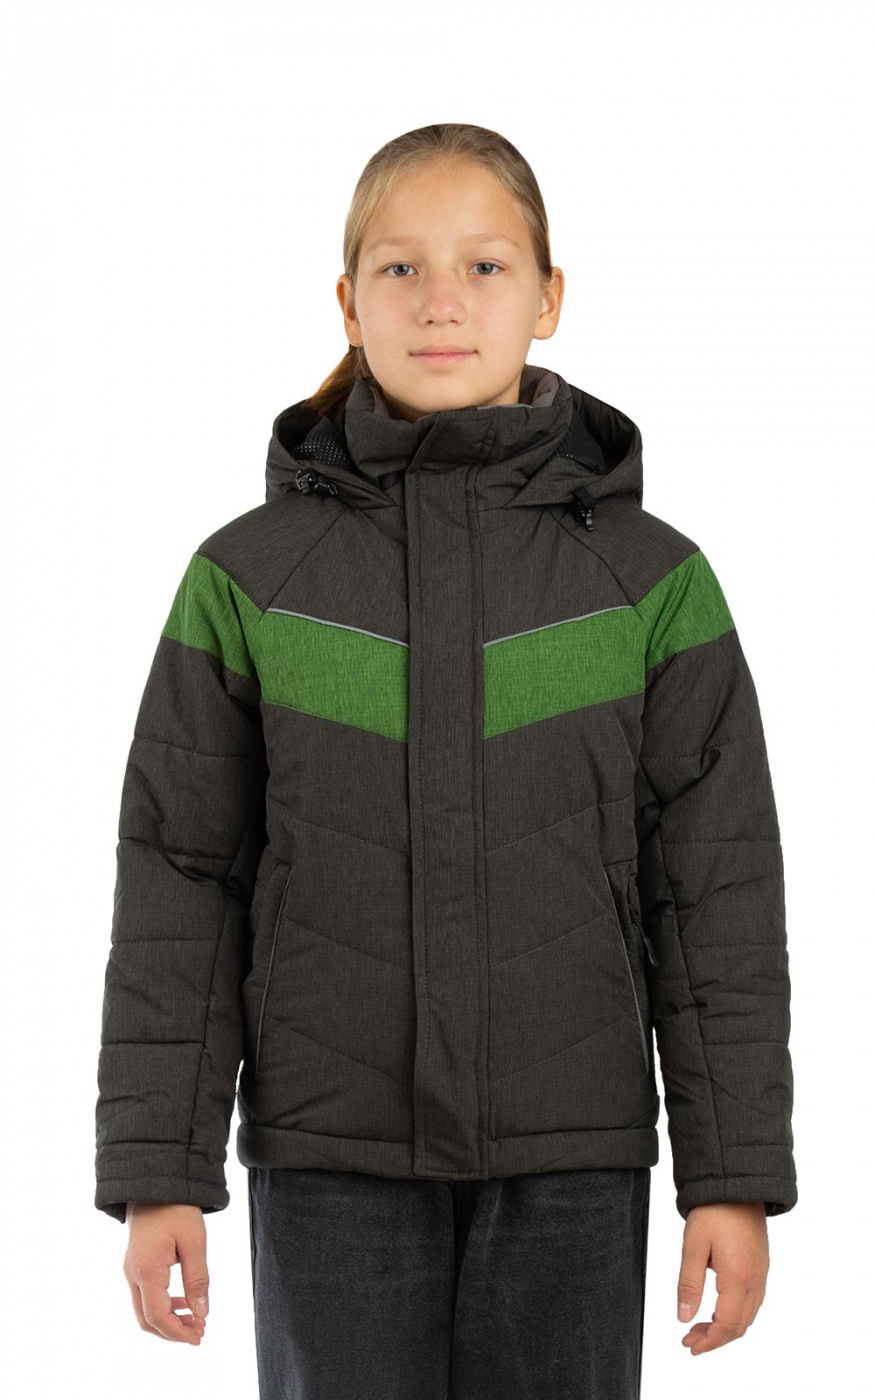 Куртка детская МАУГЛИ Junior (Джуниор) плащевая серо-зеленая